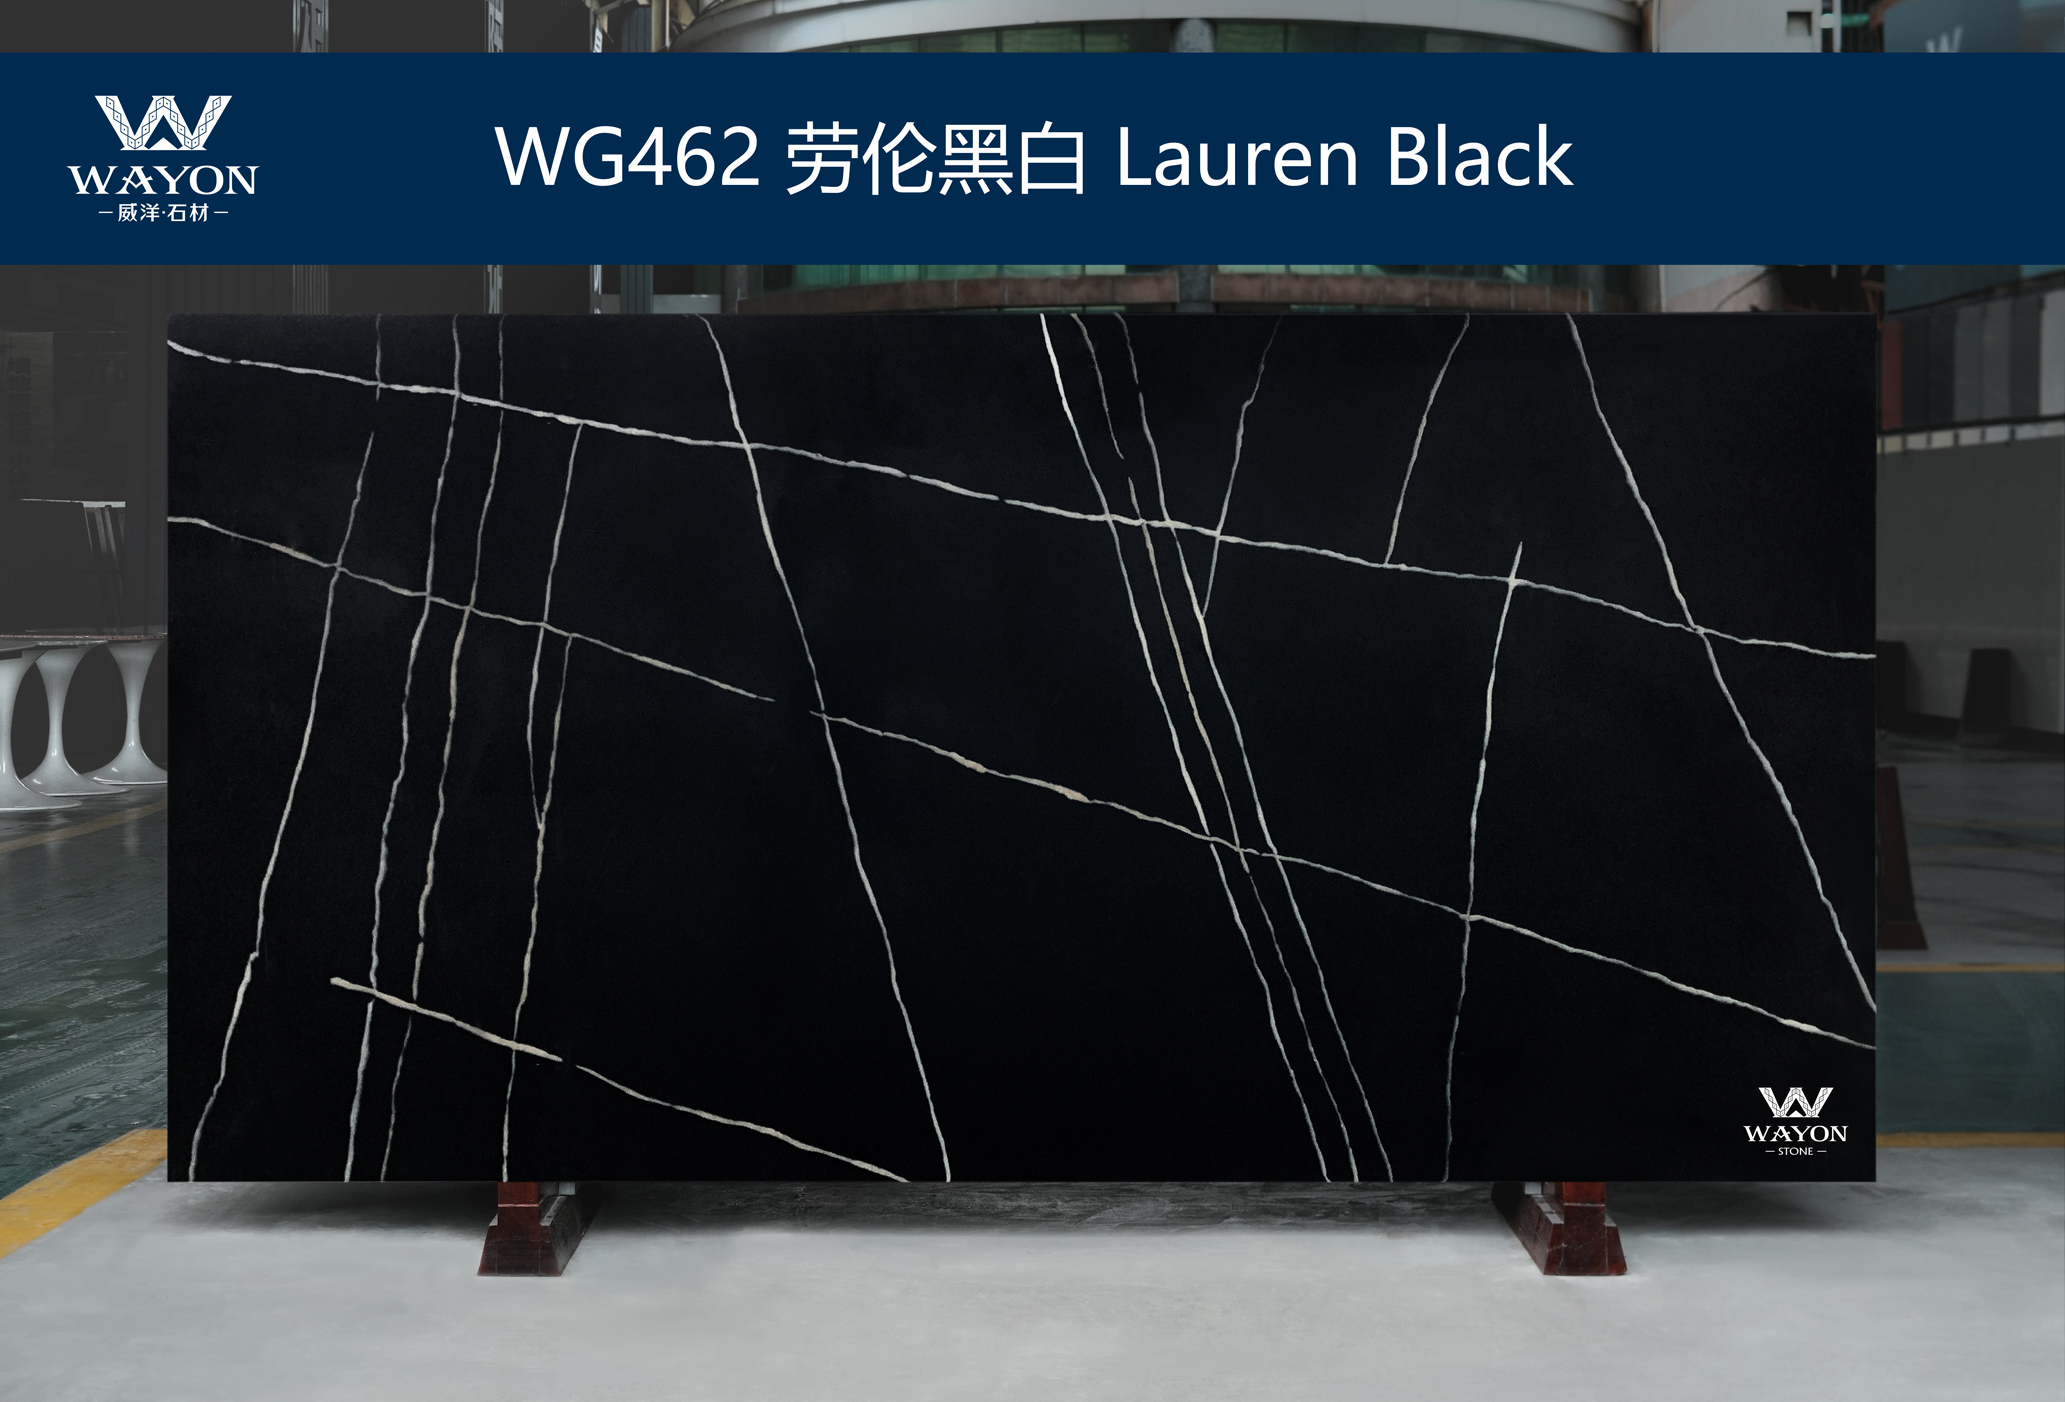 WG462 Lauren Black